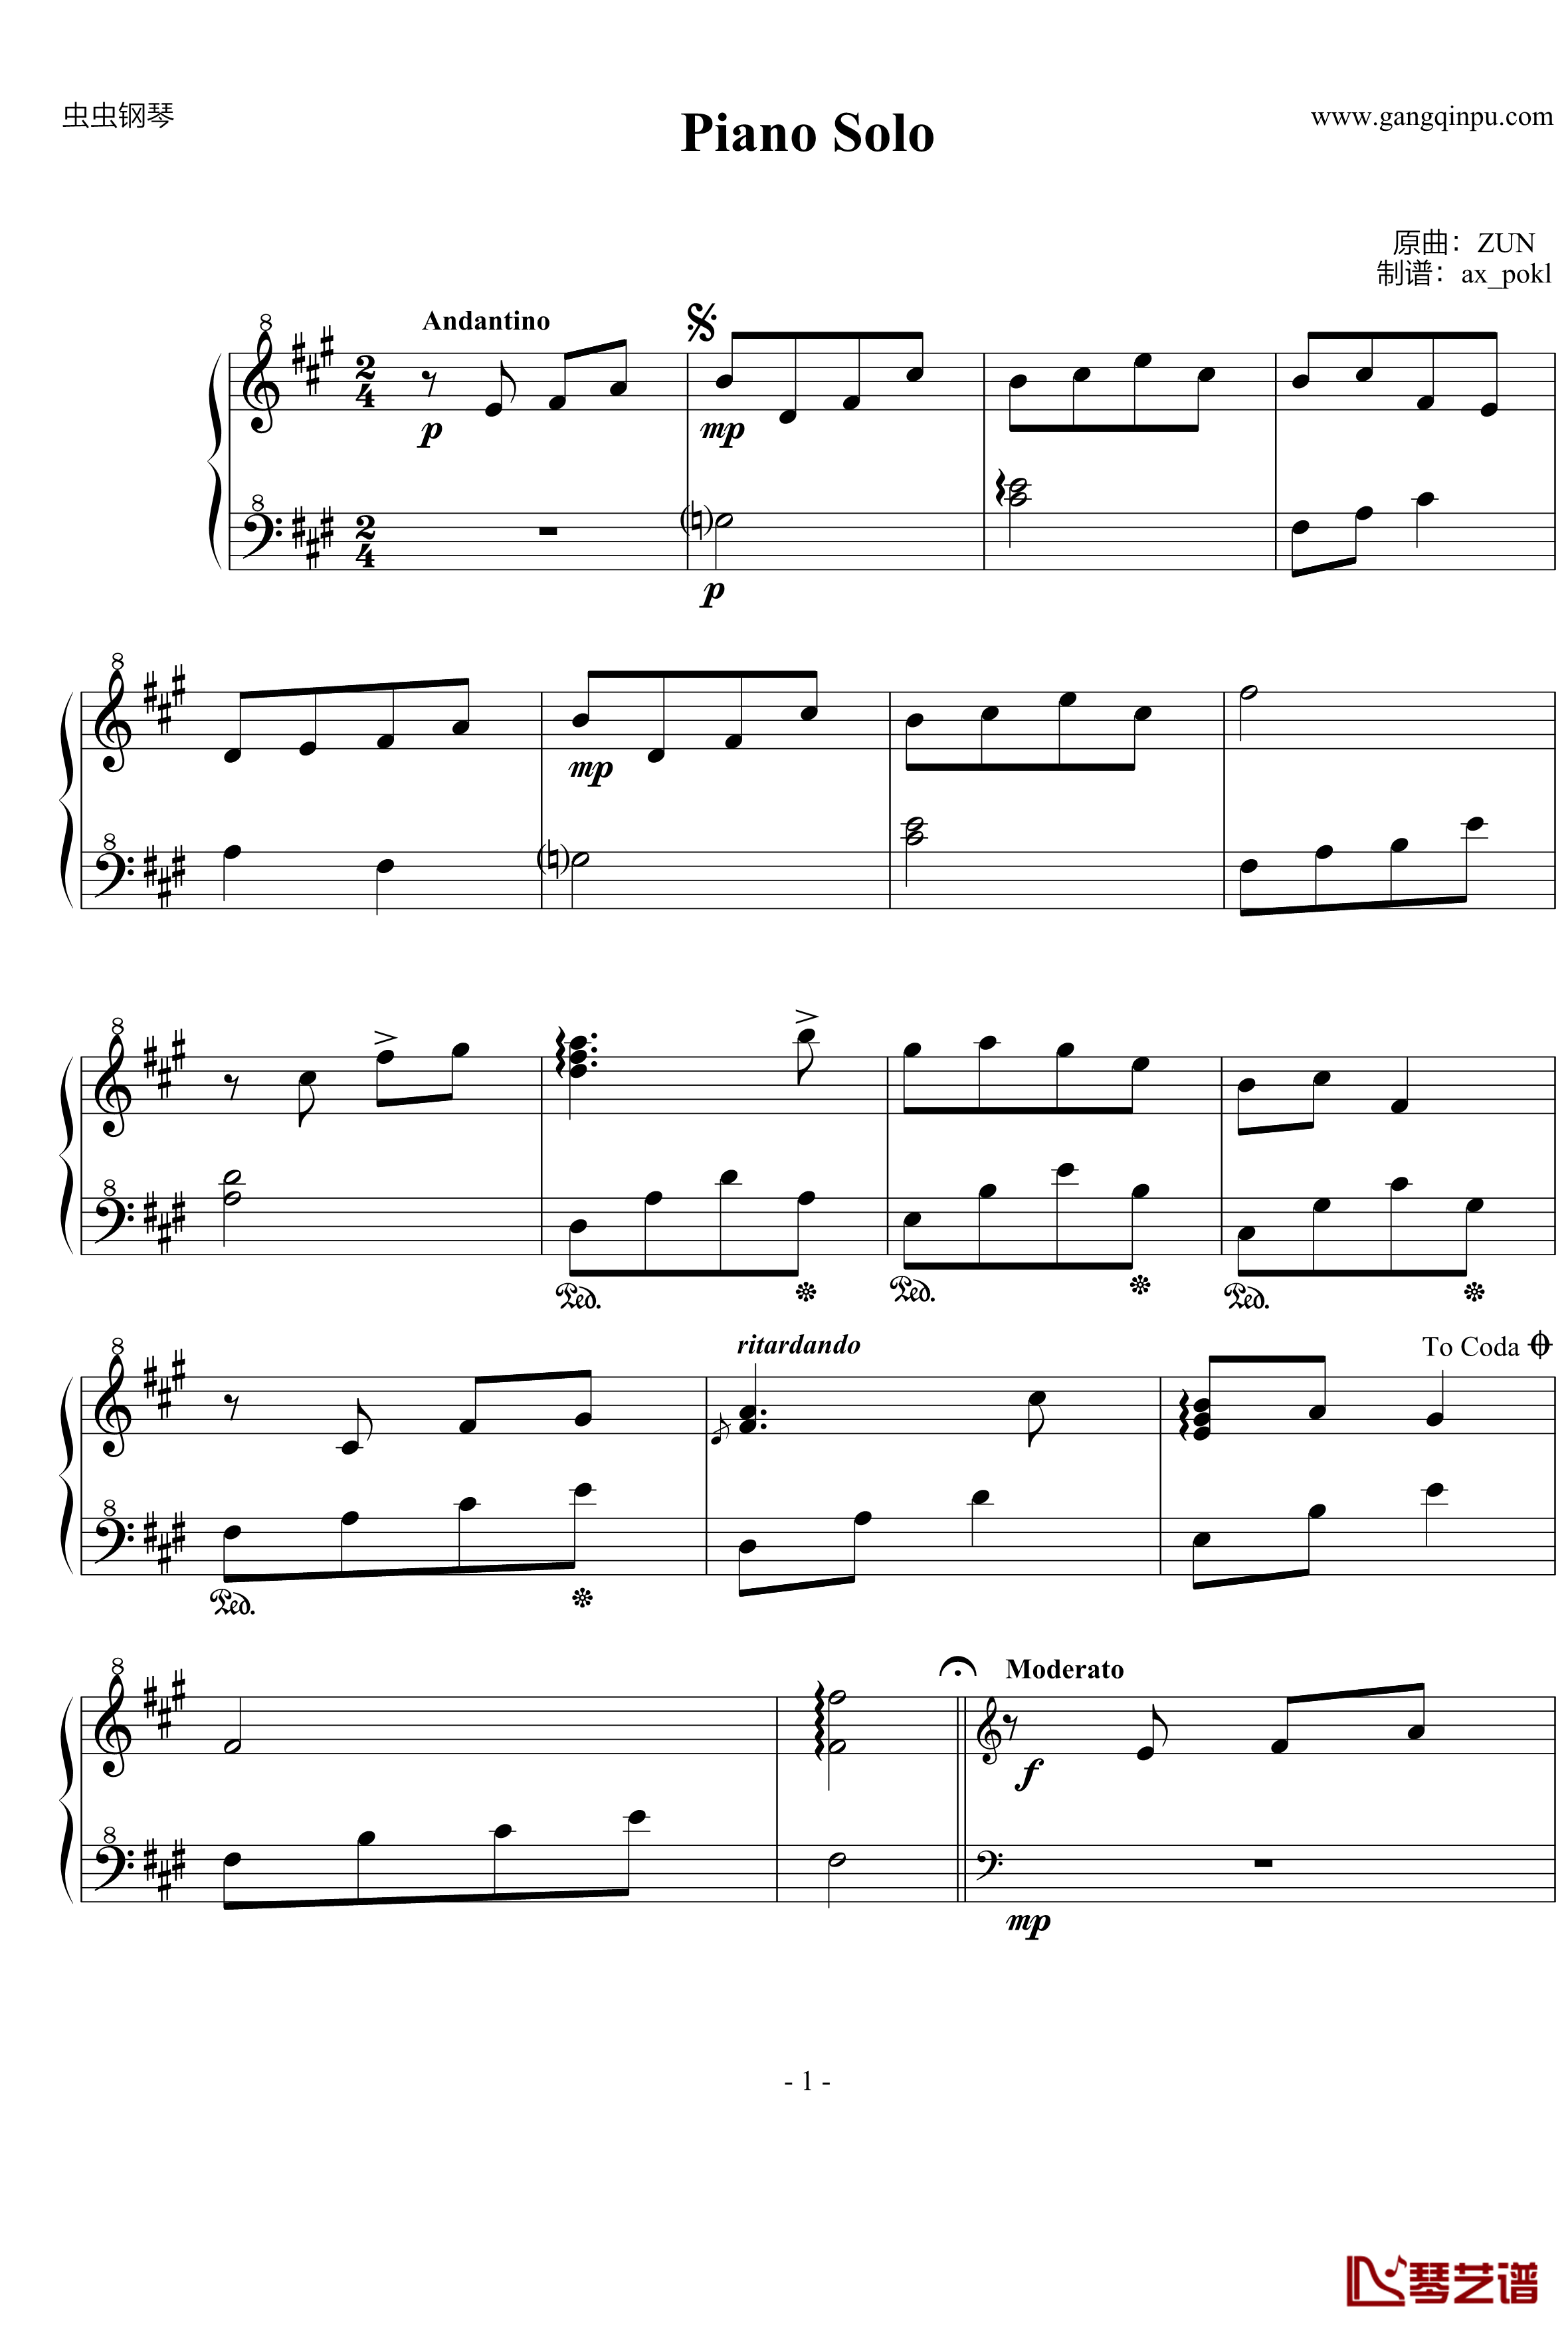 Piano Solo钢琴谱-zun1